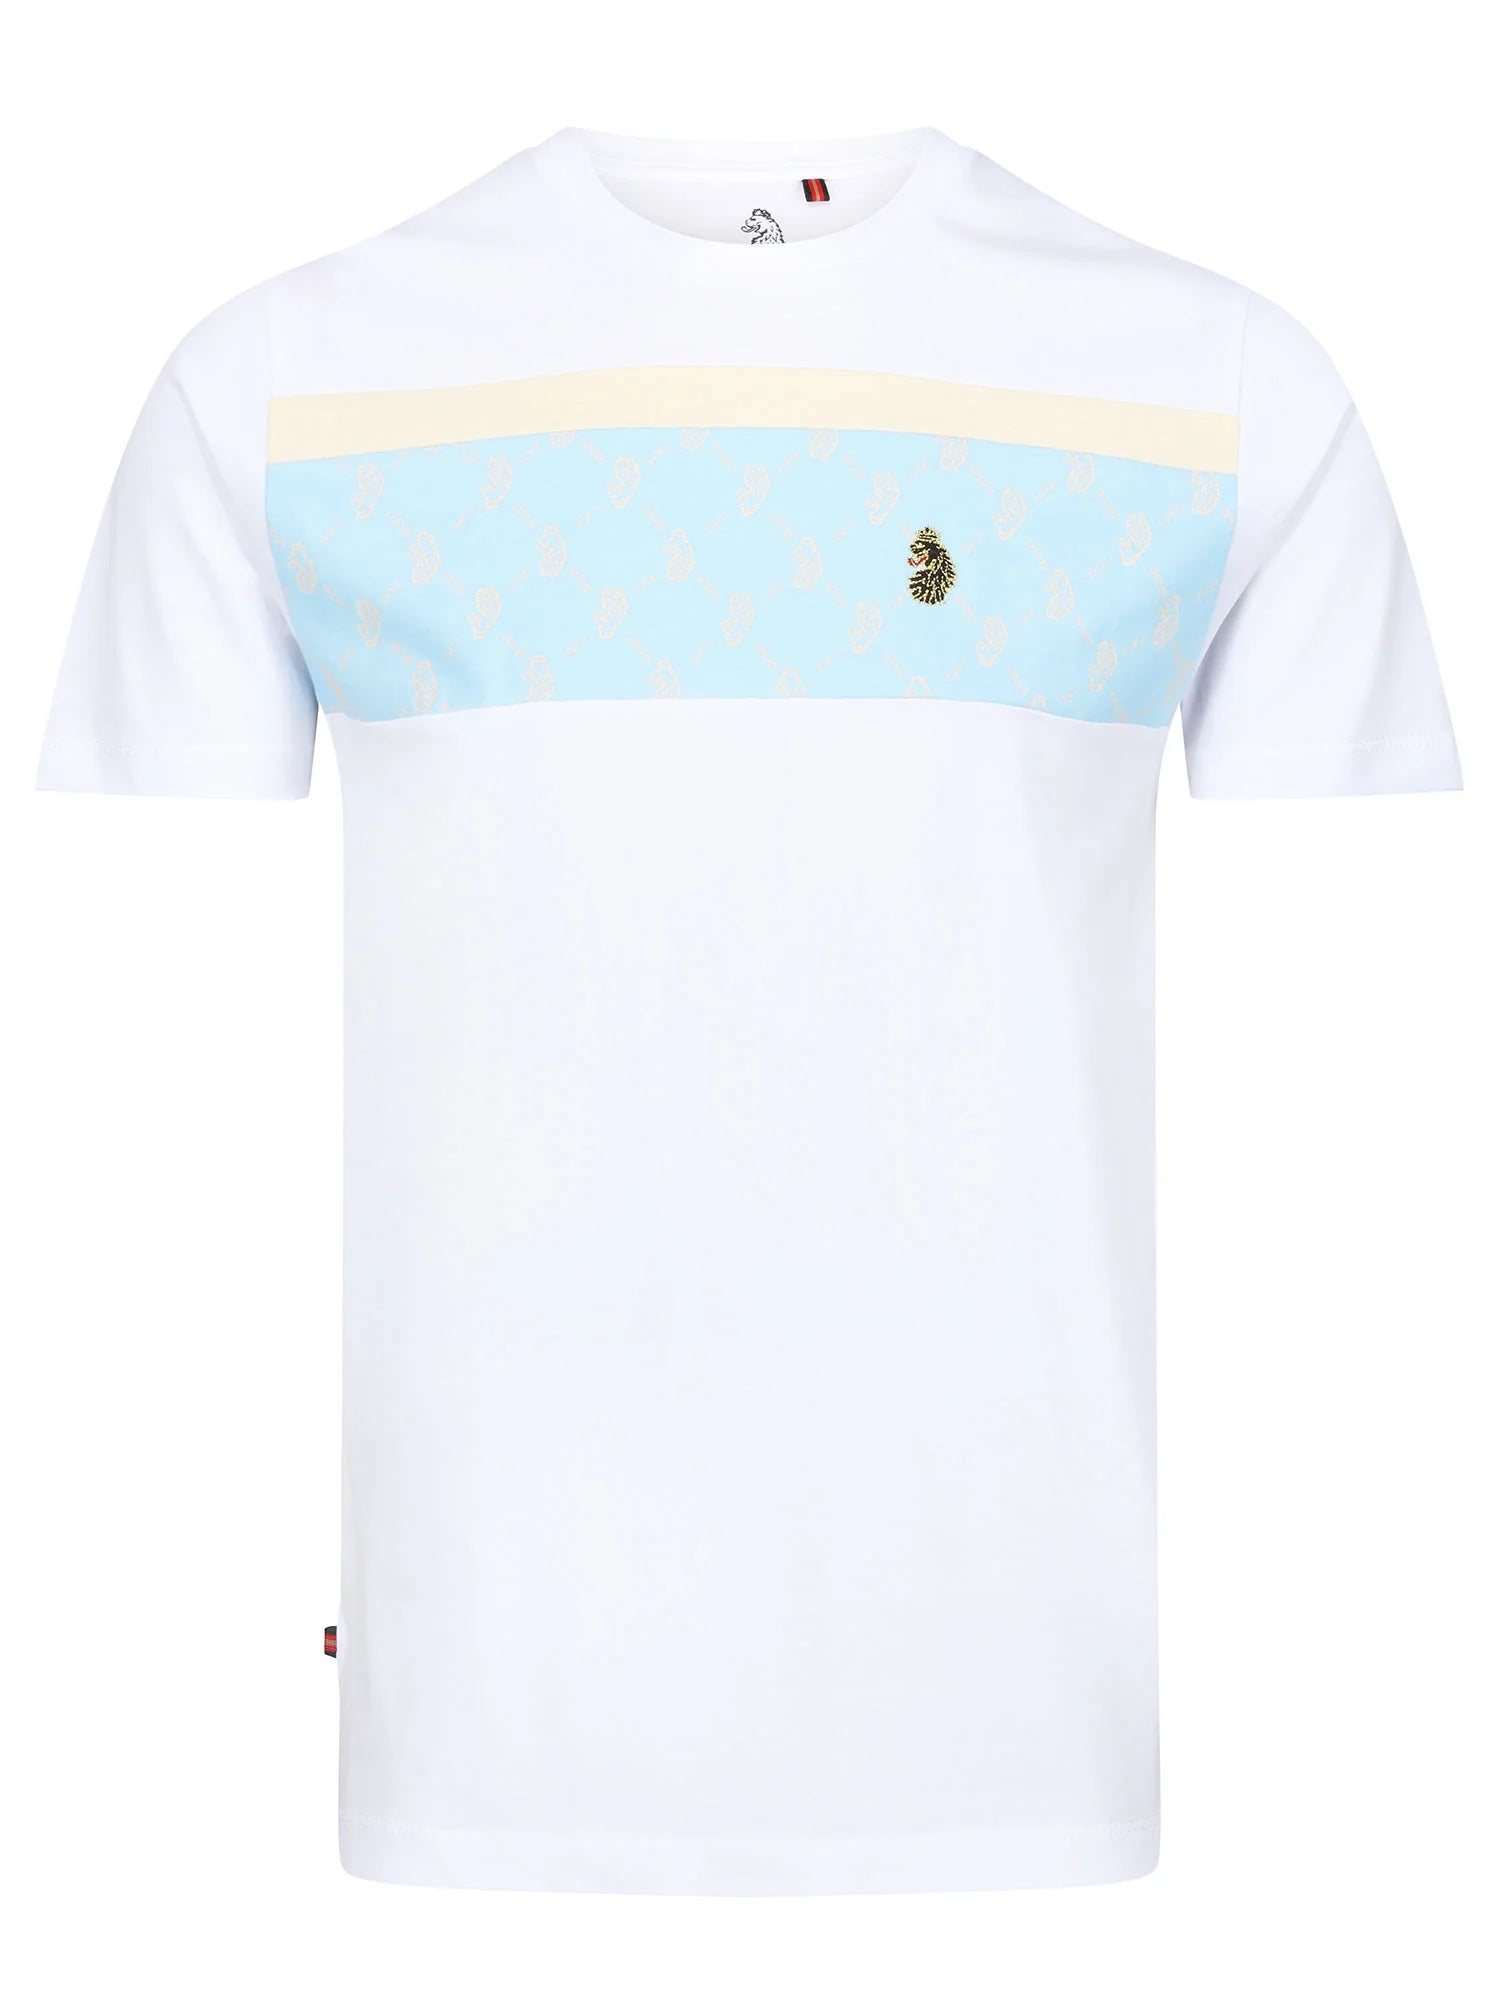 Luke Lions Den T-Shirt White/Sky Blue